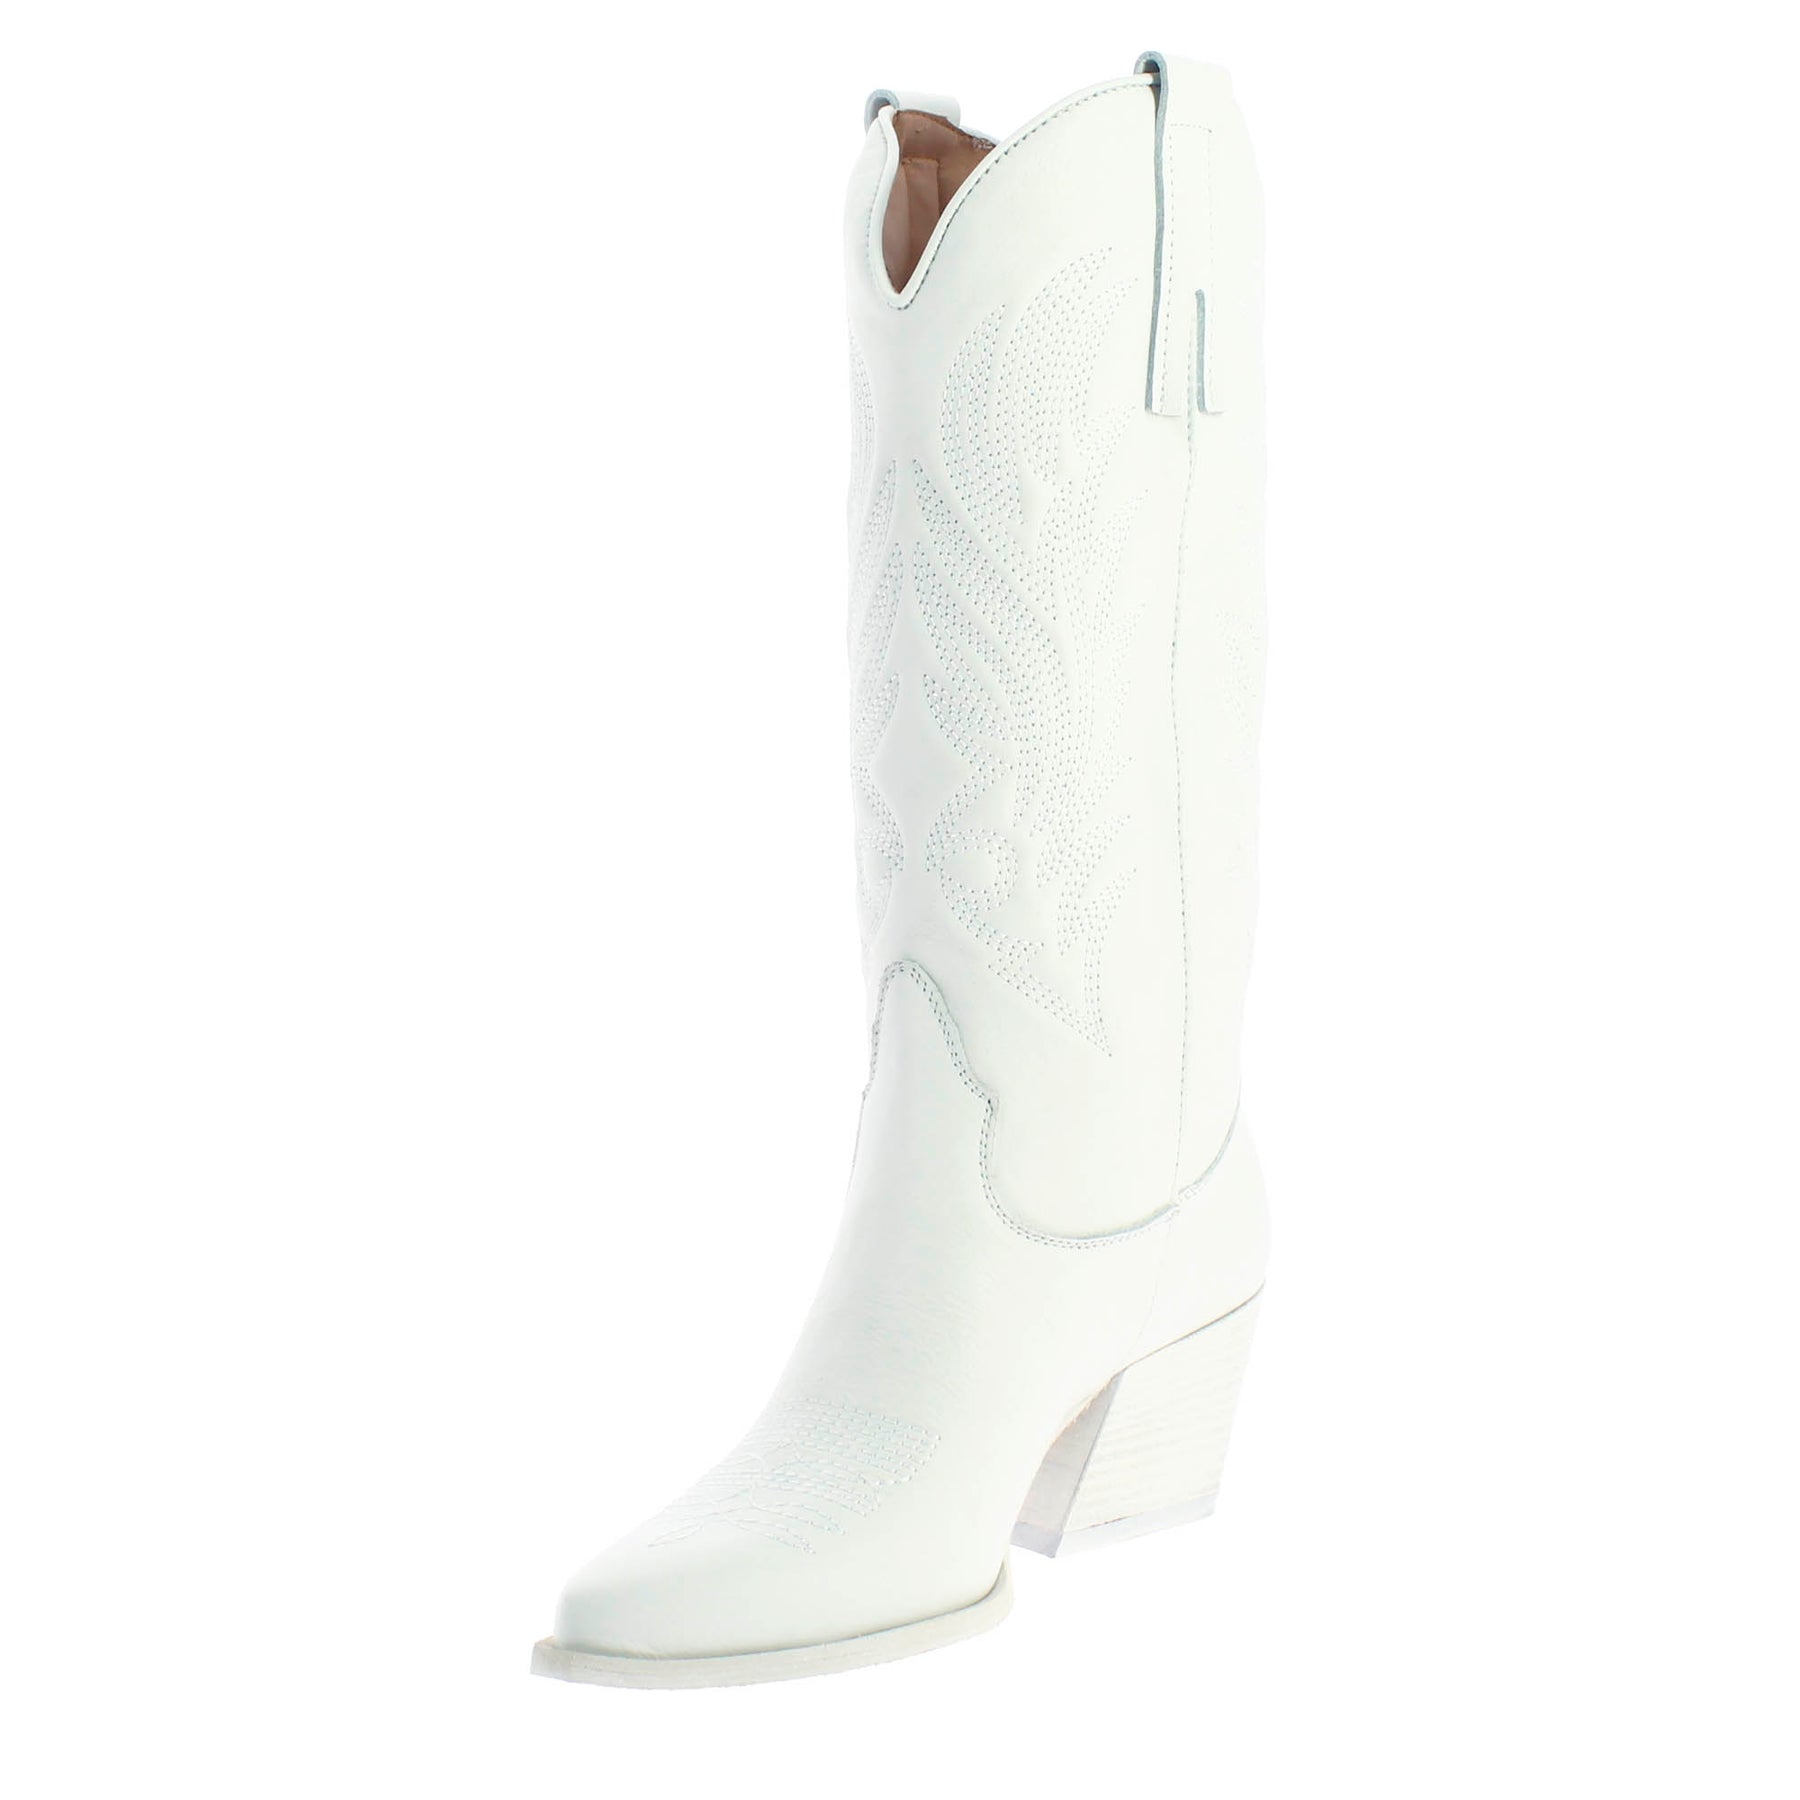 Bottes texanes moyennes pour femme en cuir blanc avec broderie.